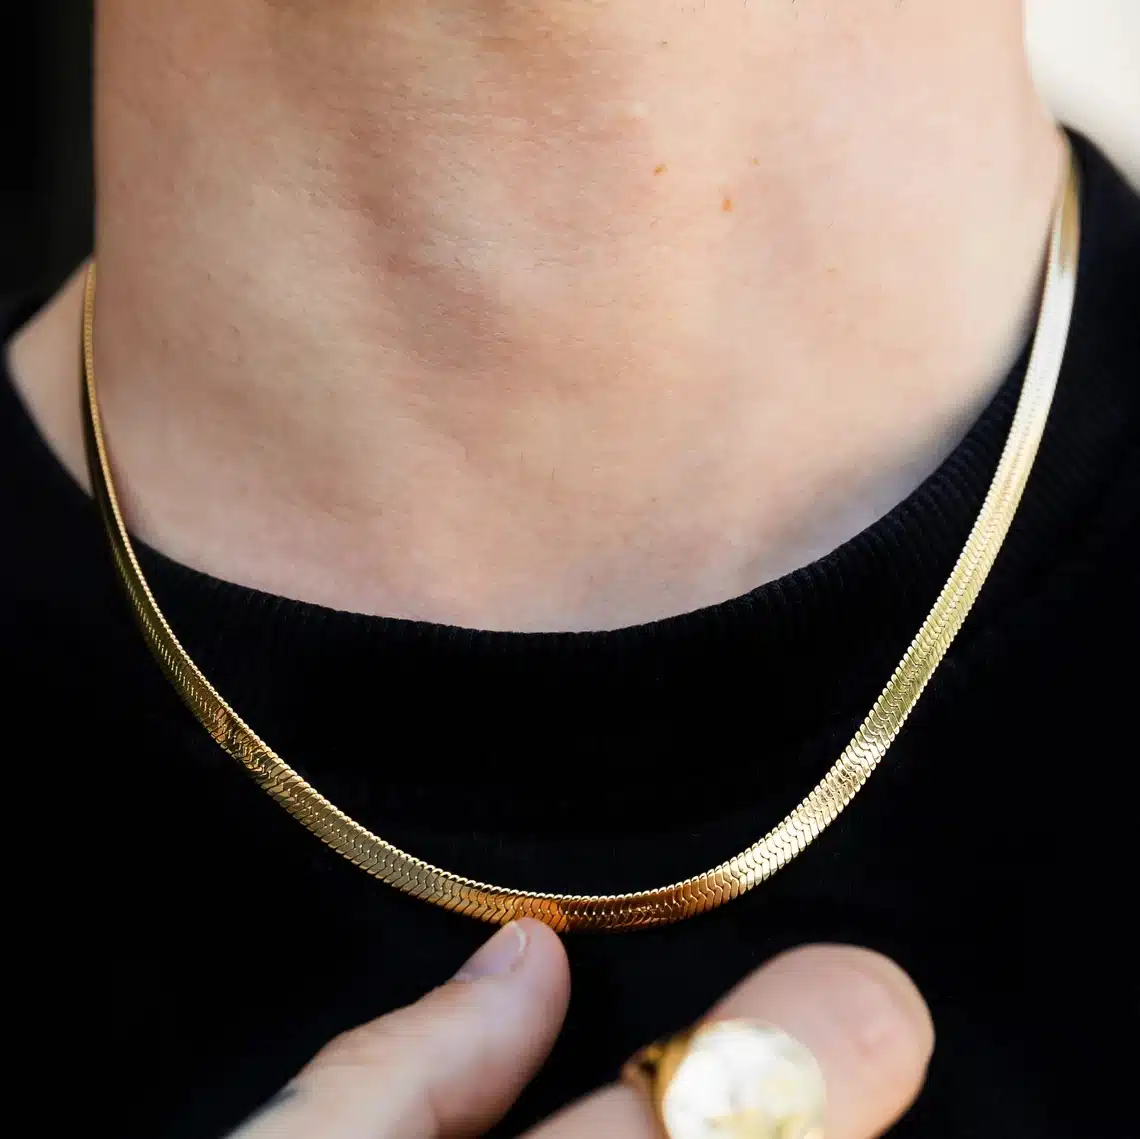 Men's Gold Chains + Necklaces